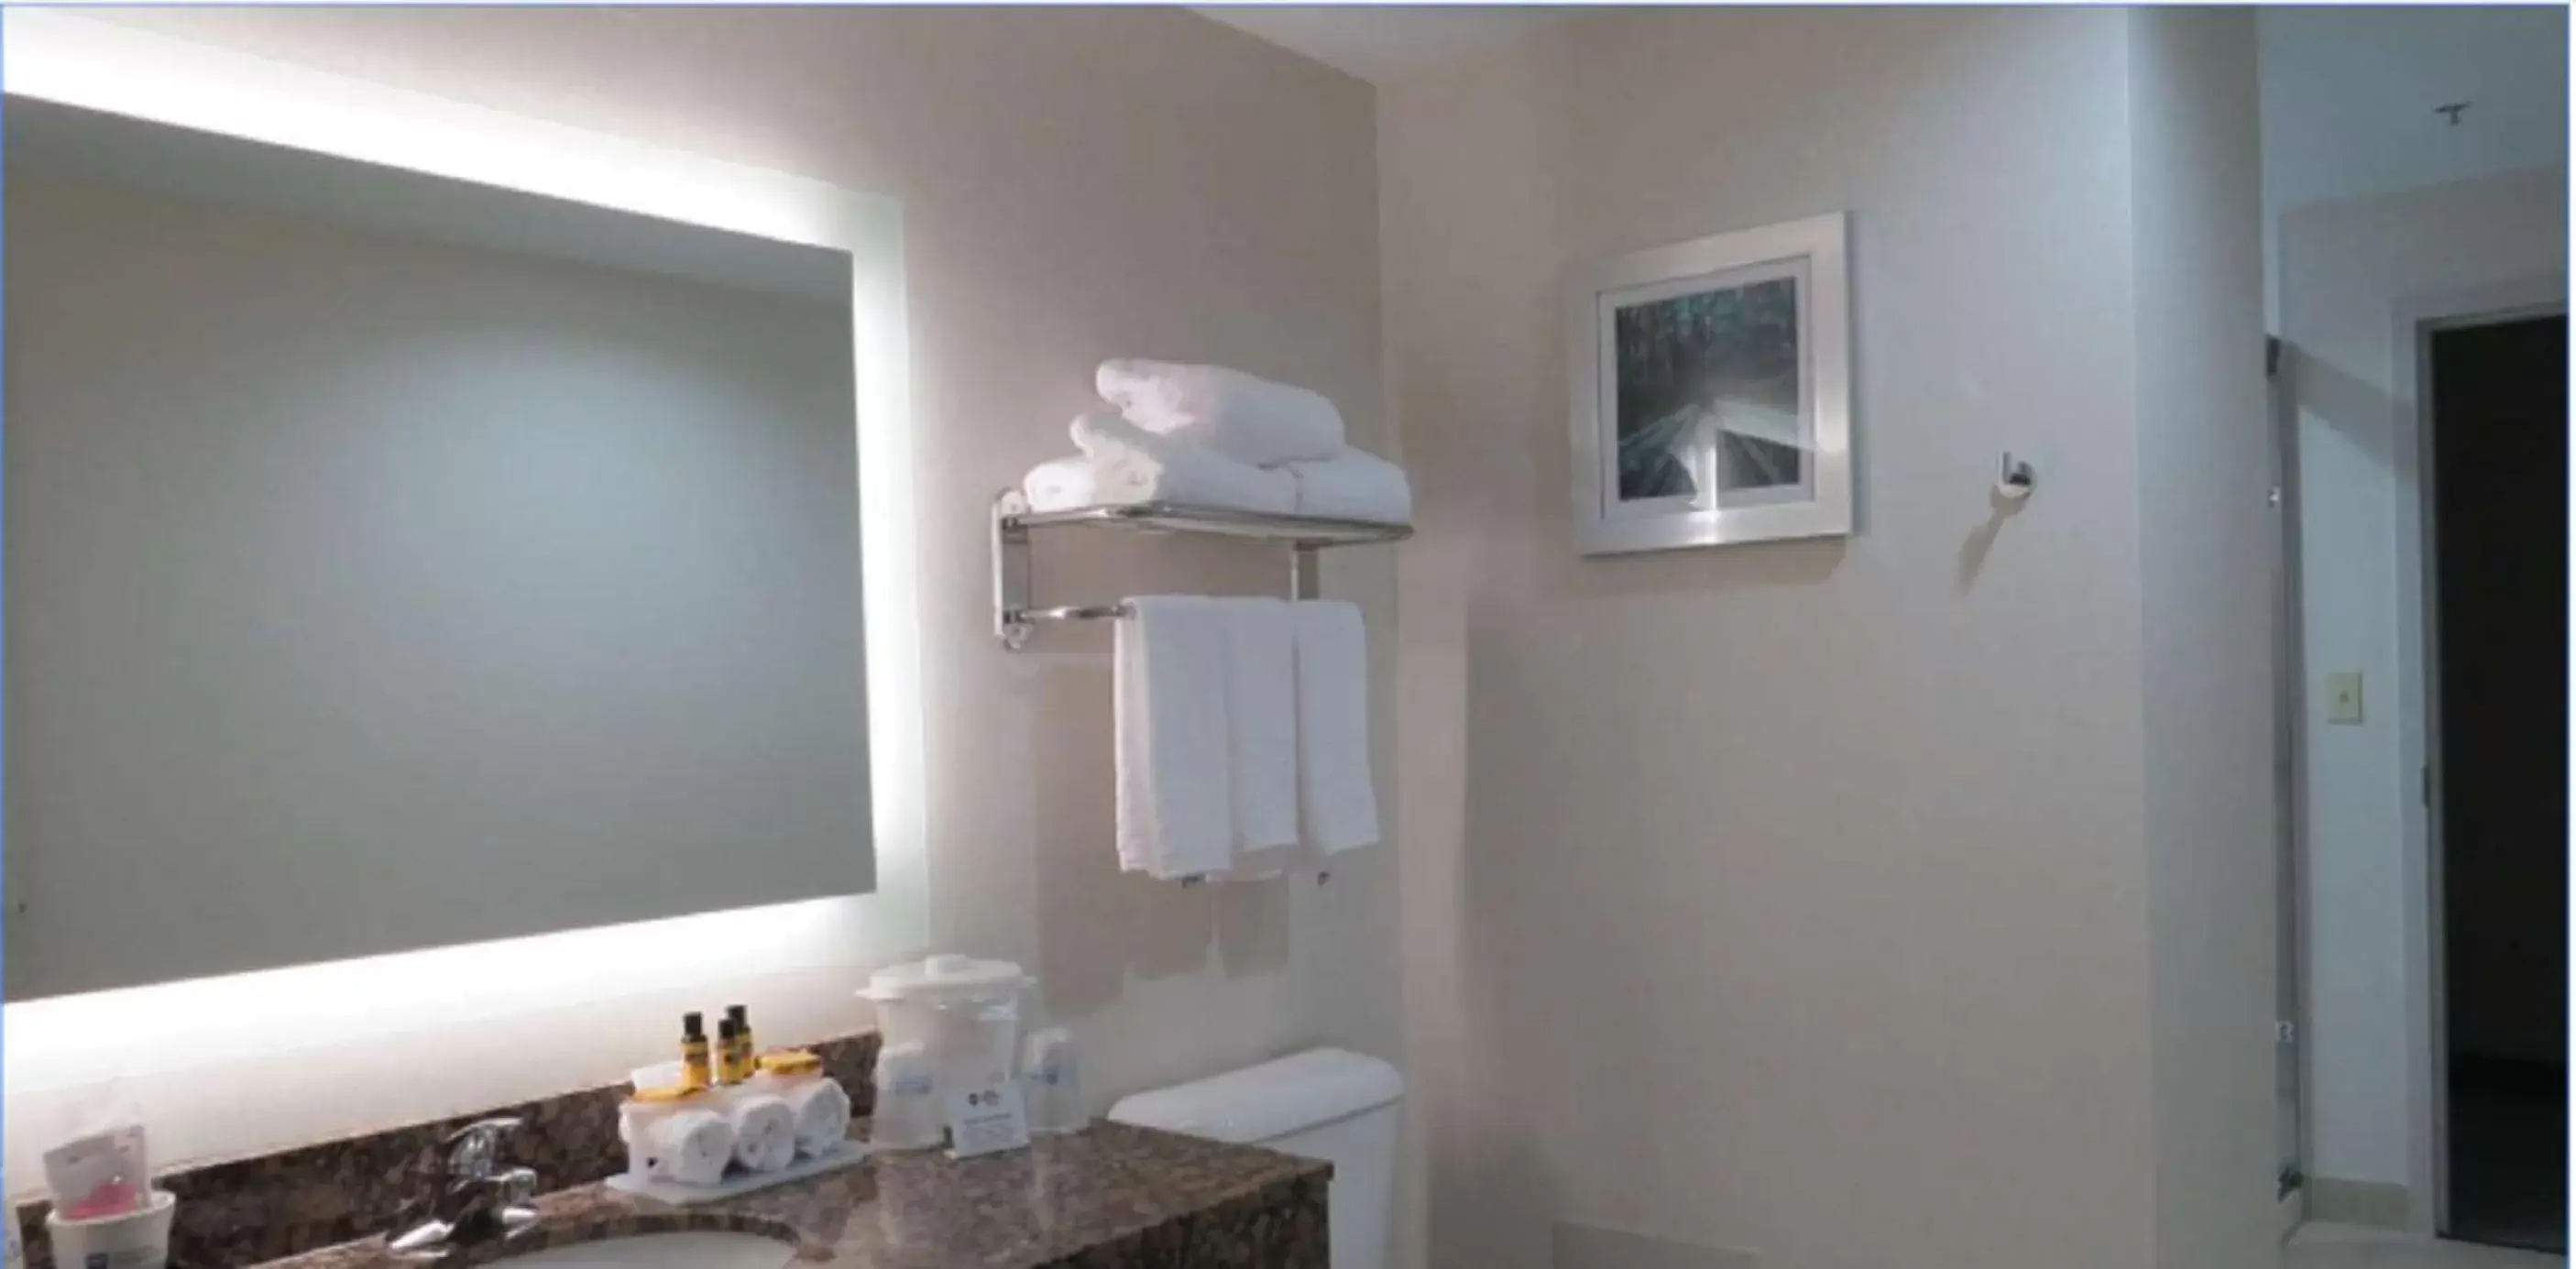 Bathroom in Best Western Plus Wilkes Barre-Scranton Airport Hotel